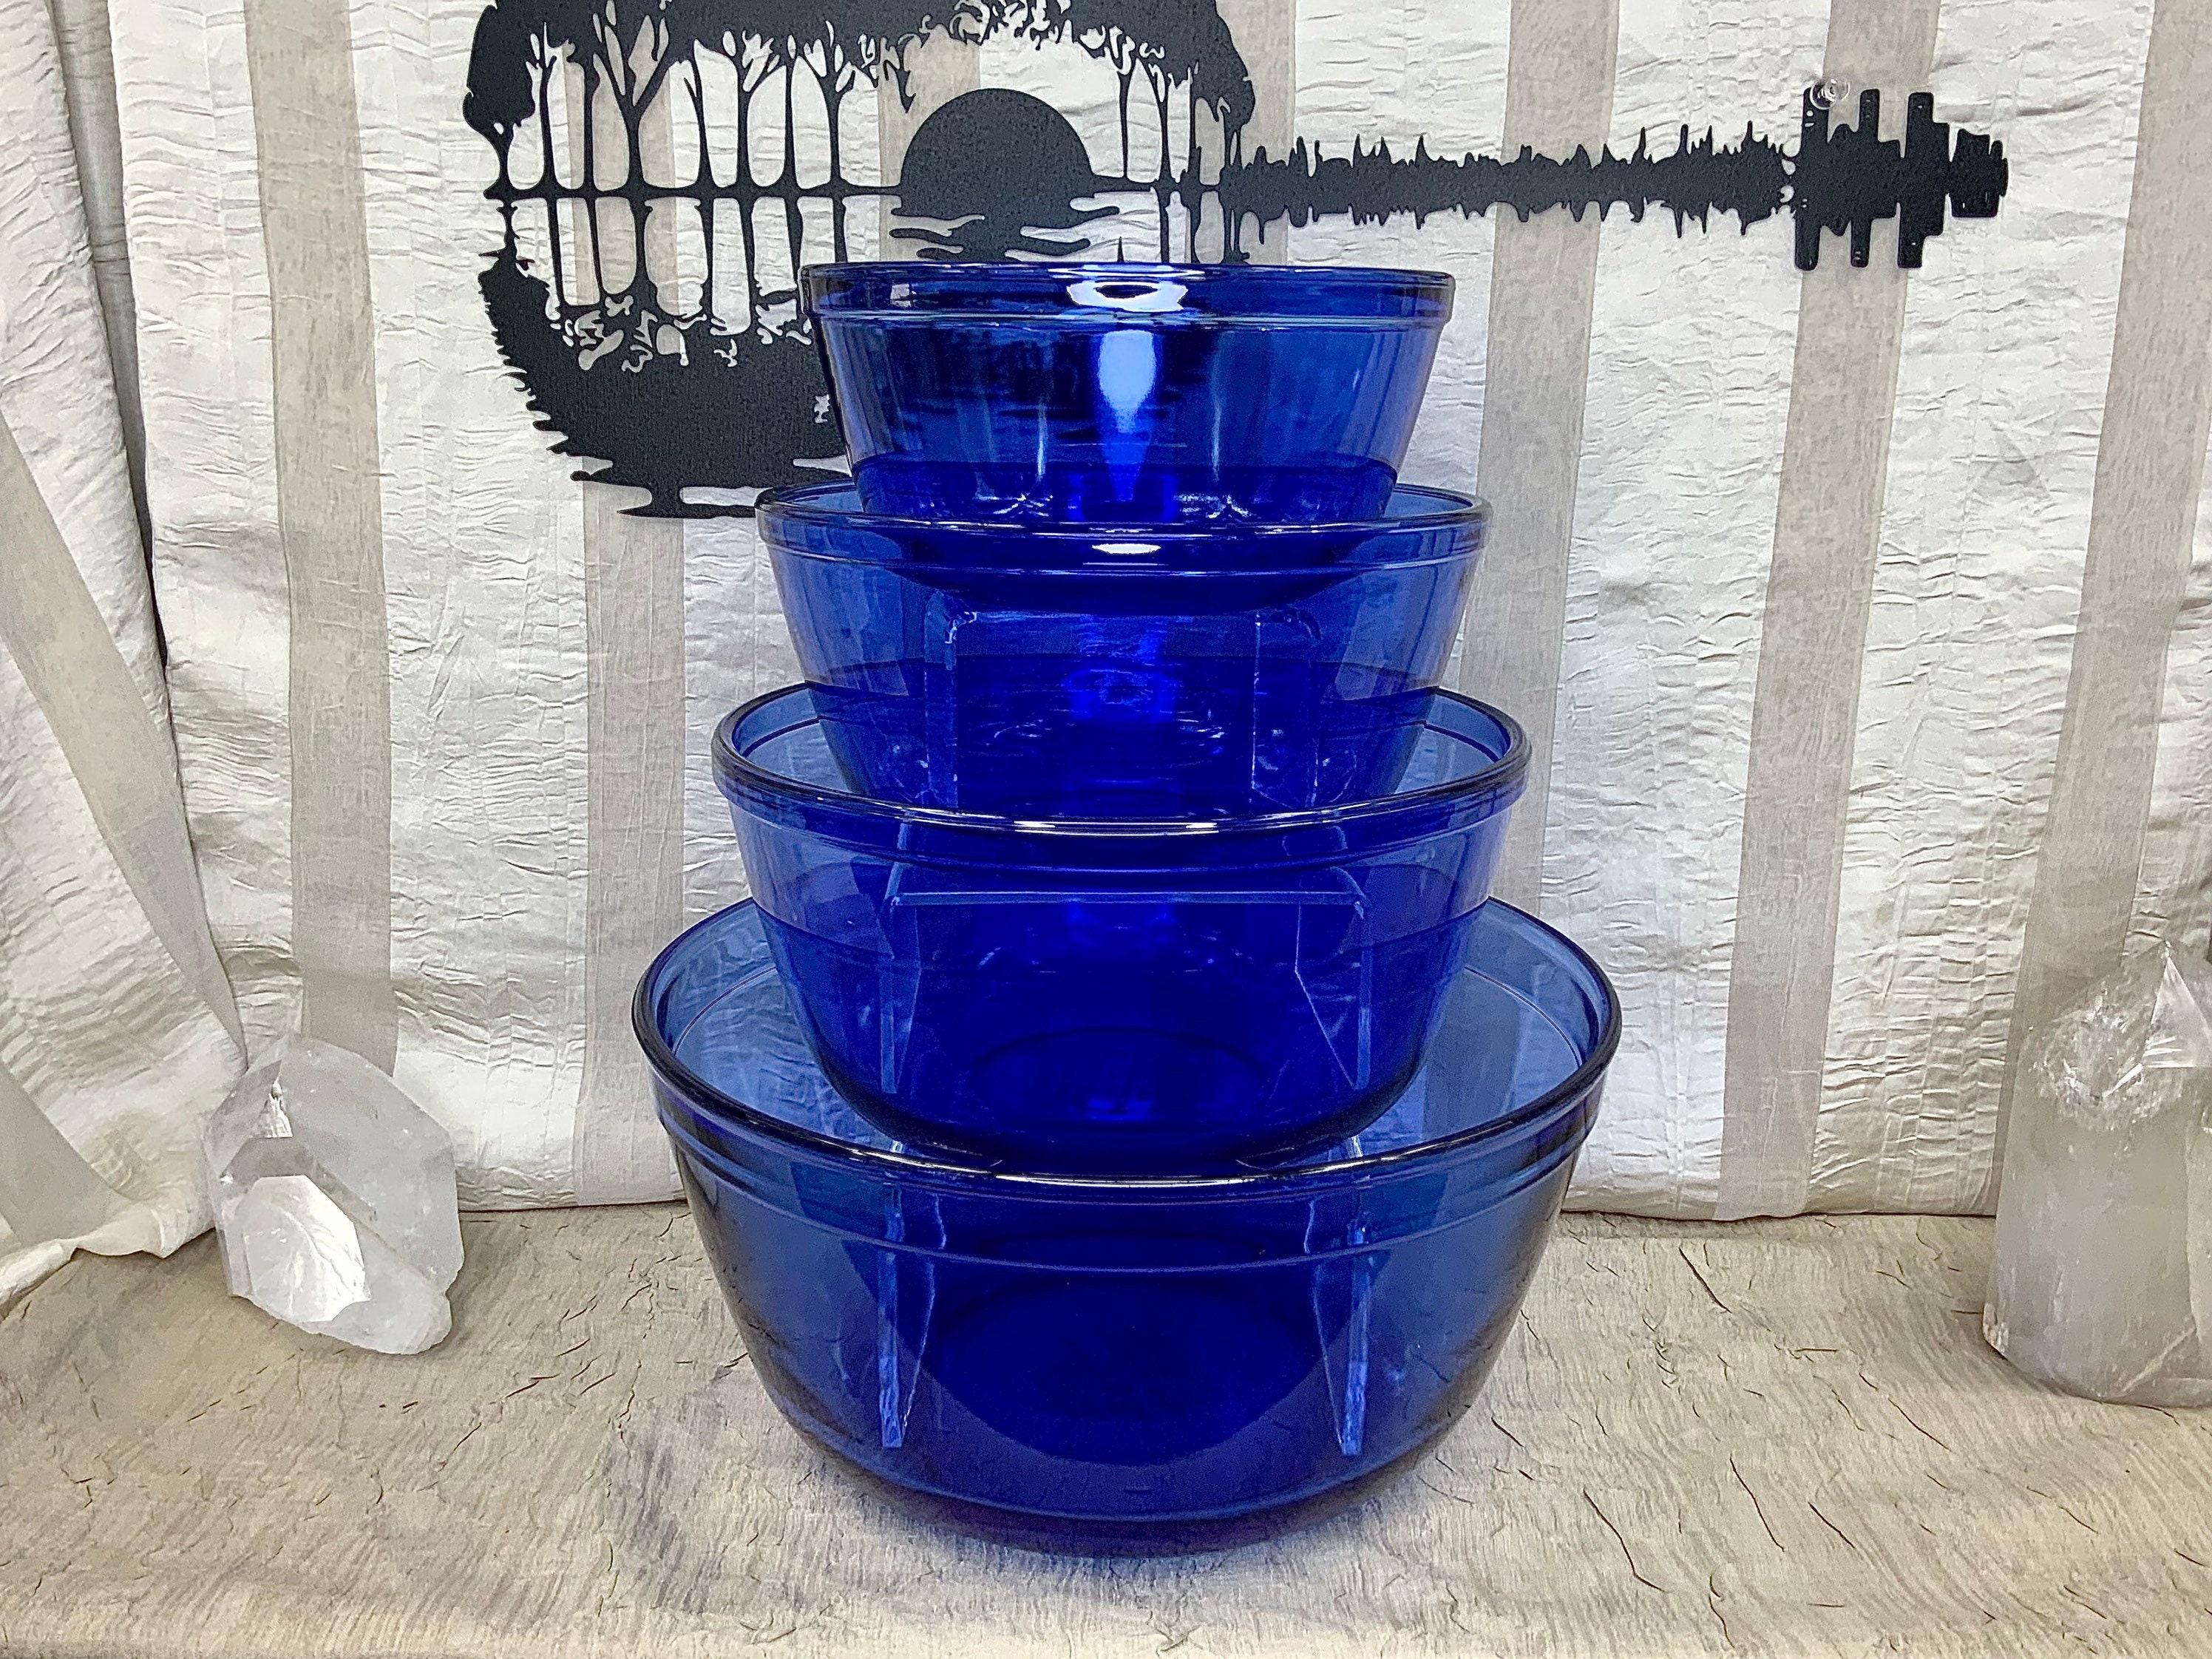 Vintage blue green aqua art glass swirl pattern glass art dish bowl